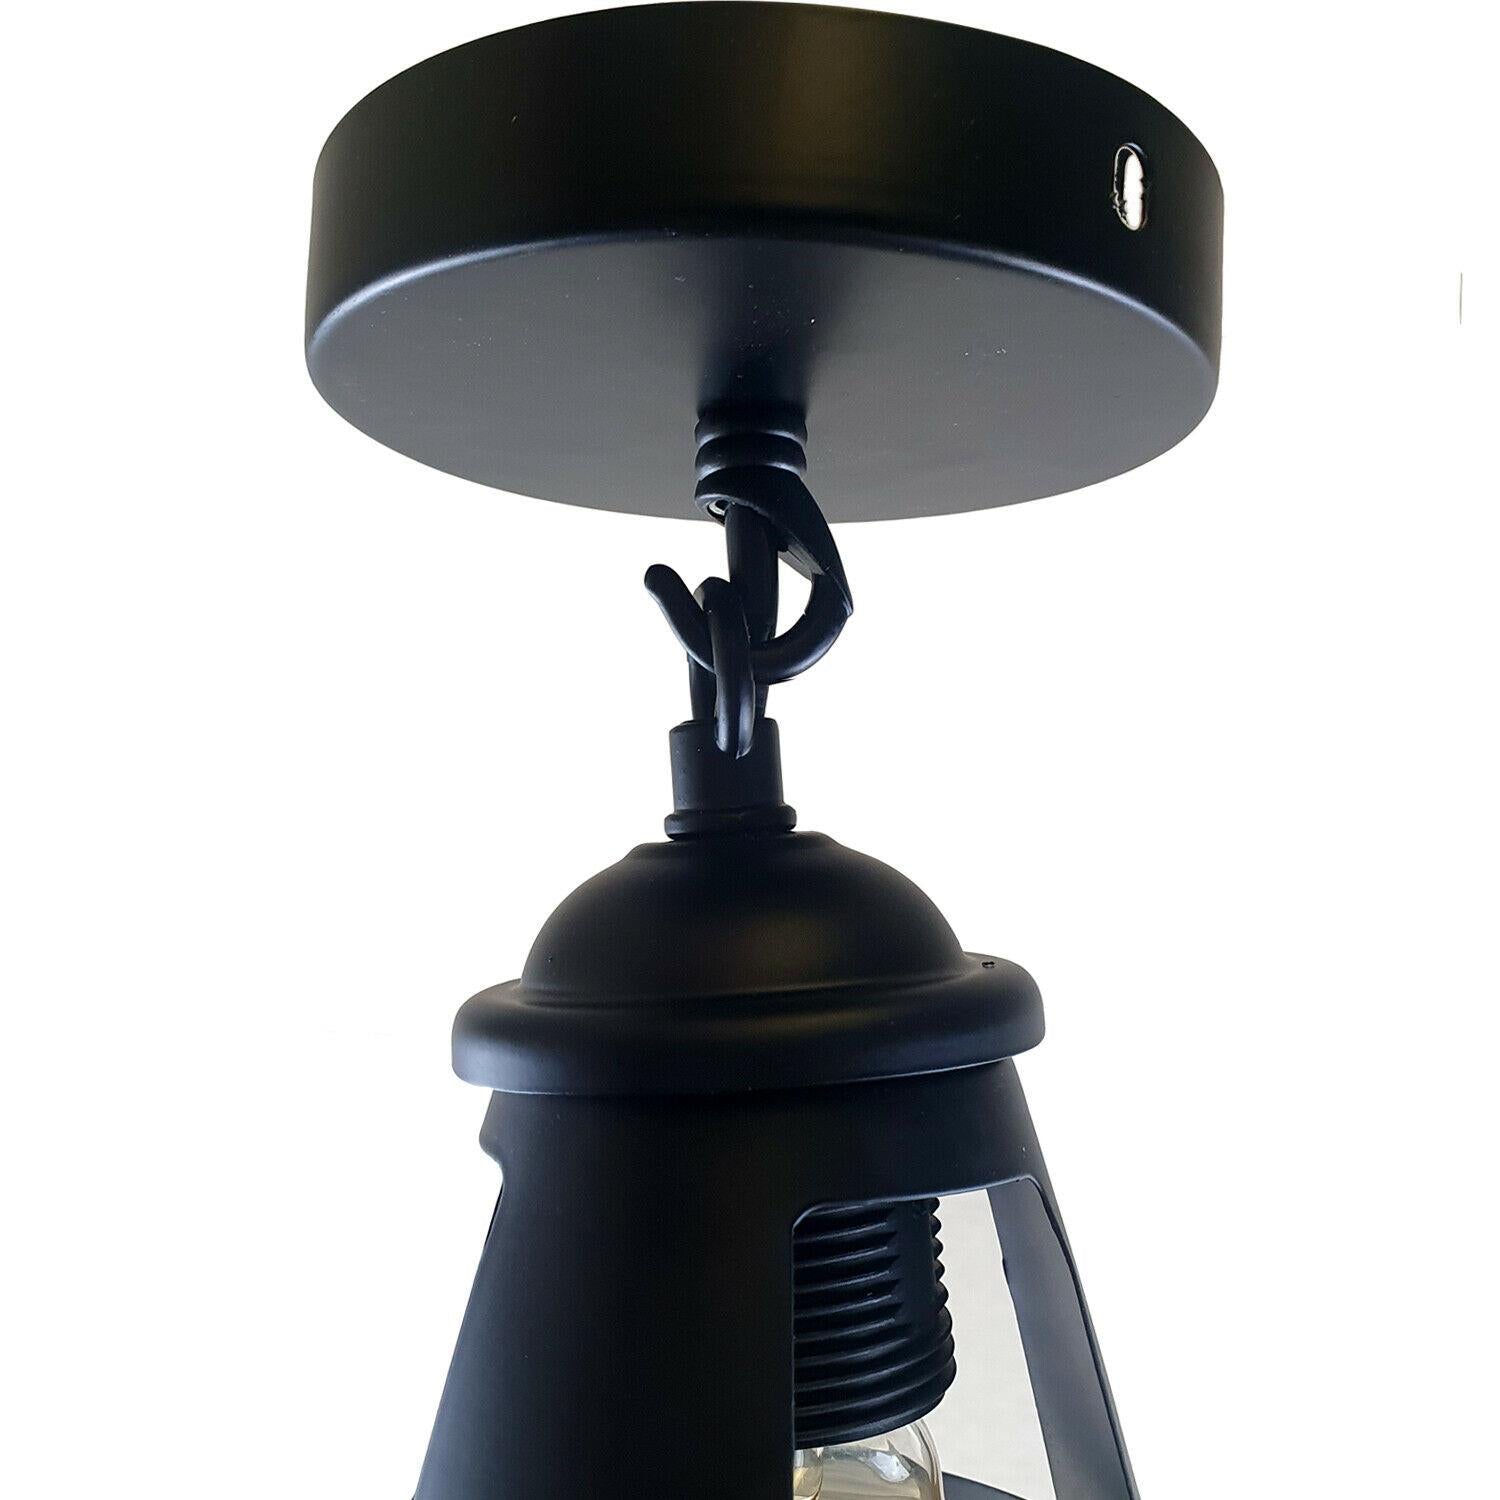 Colour Industrial Metal Ceiling Plate Light Holder & Retro Pendant Lamp Shade~1412 - LEDSone UK Ltd